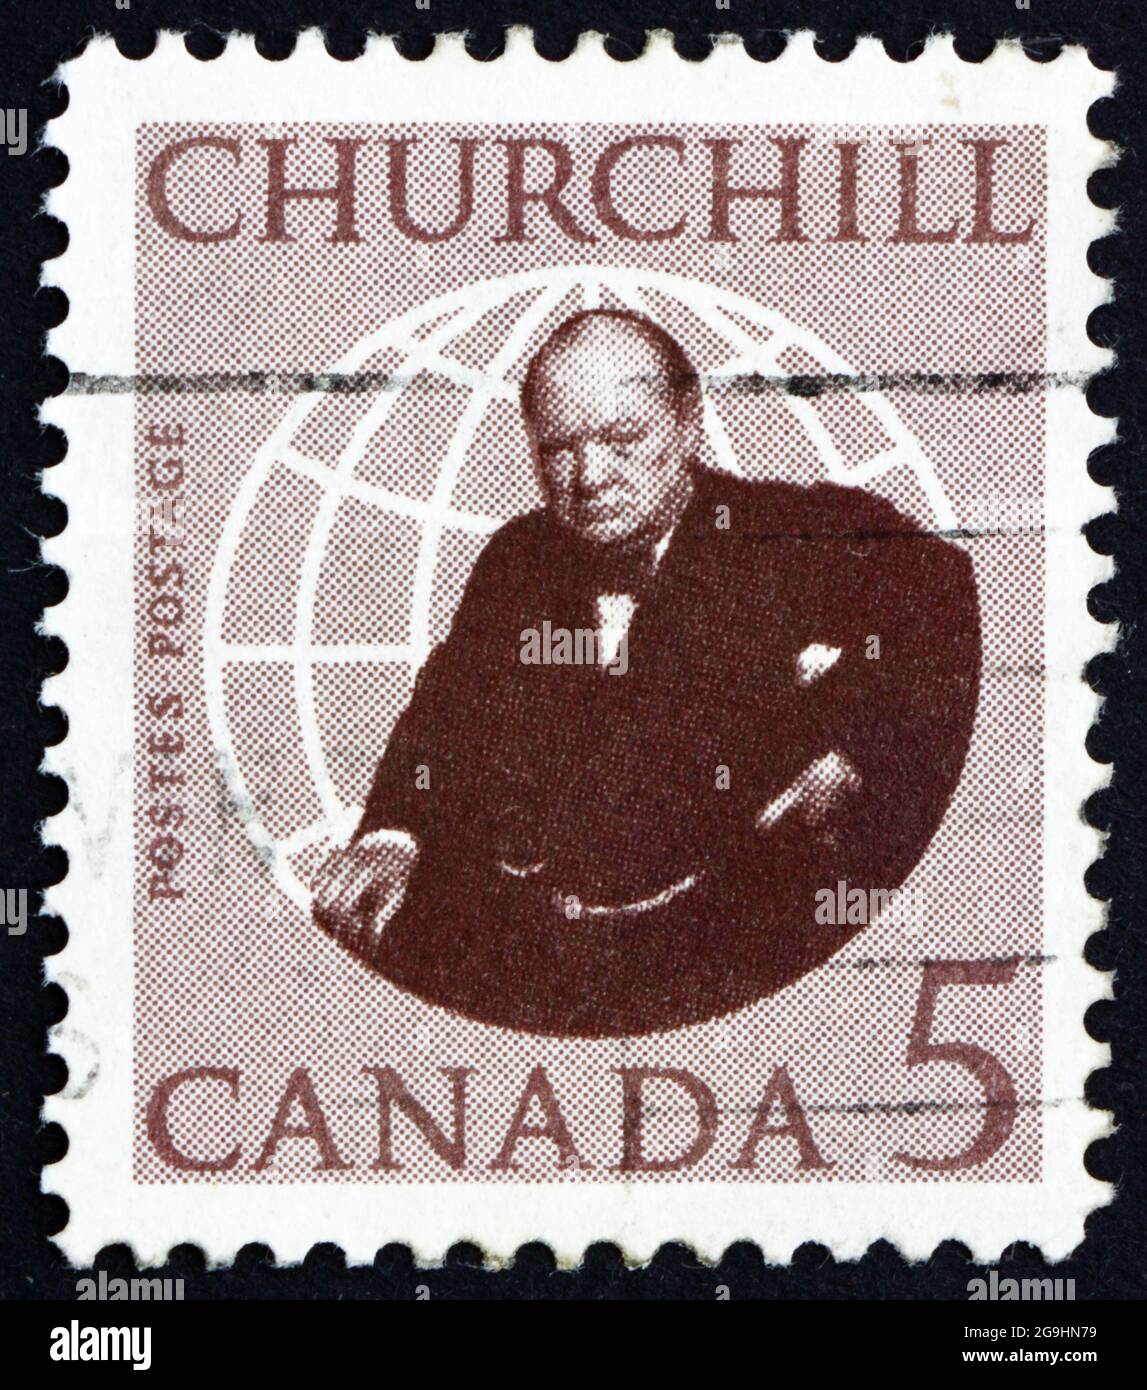 KANADA - UM 1965: Eine in Kanada gedruckte Briefmarke zeigt Sir Winston Spencer Churchill, um 1965 Stockfoto